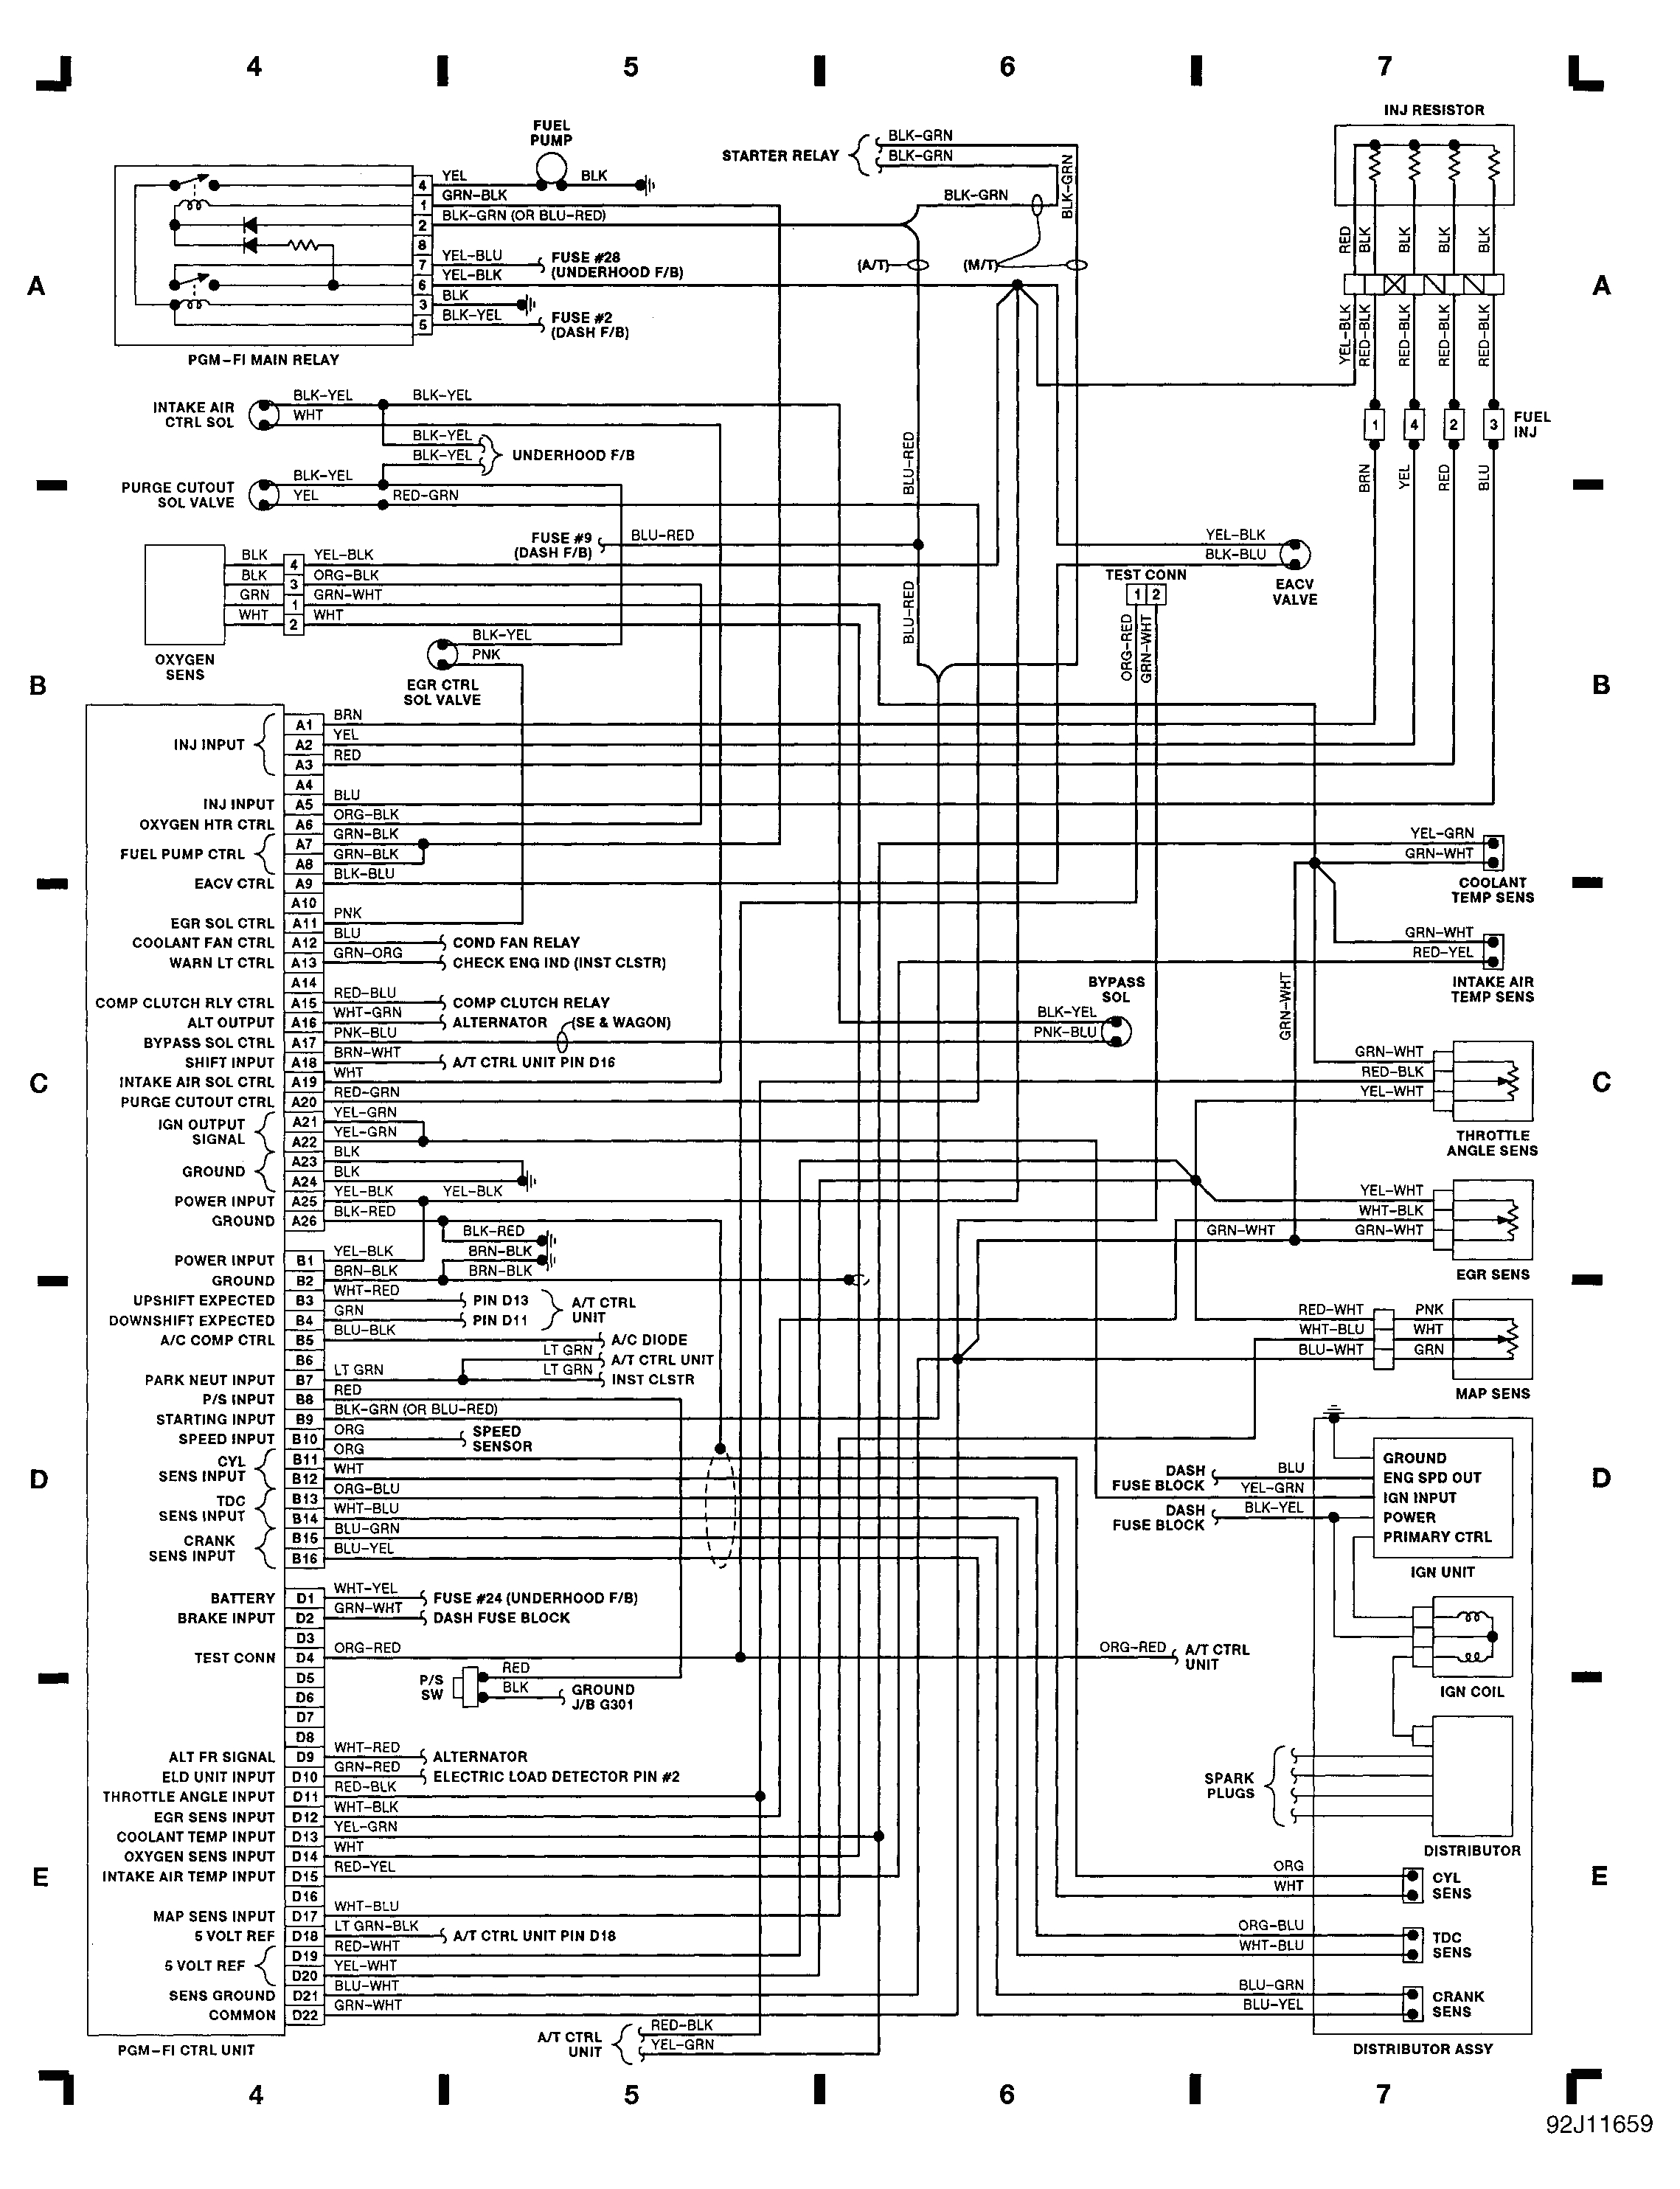 1994 civic wiring diagram wiring diagram database blog 94 civic wire diagram book diagram schema 1994